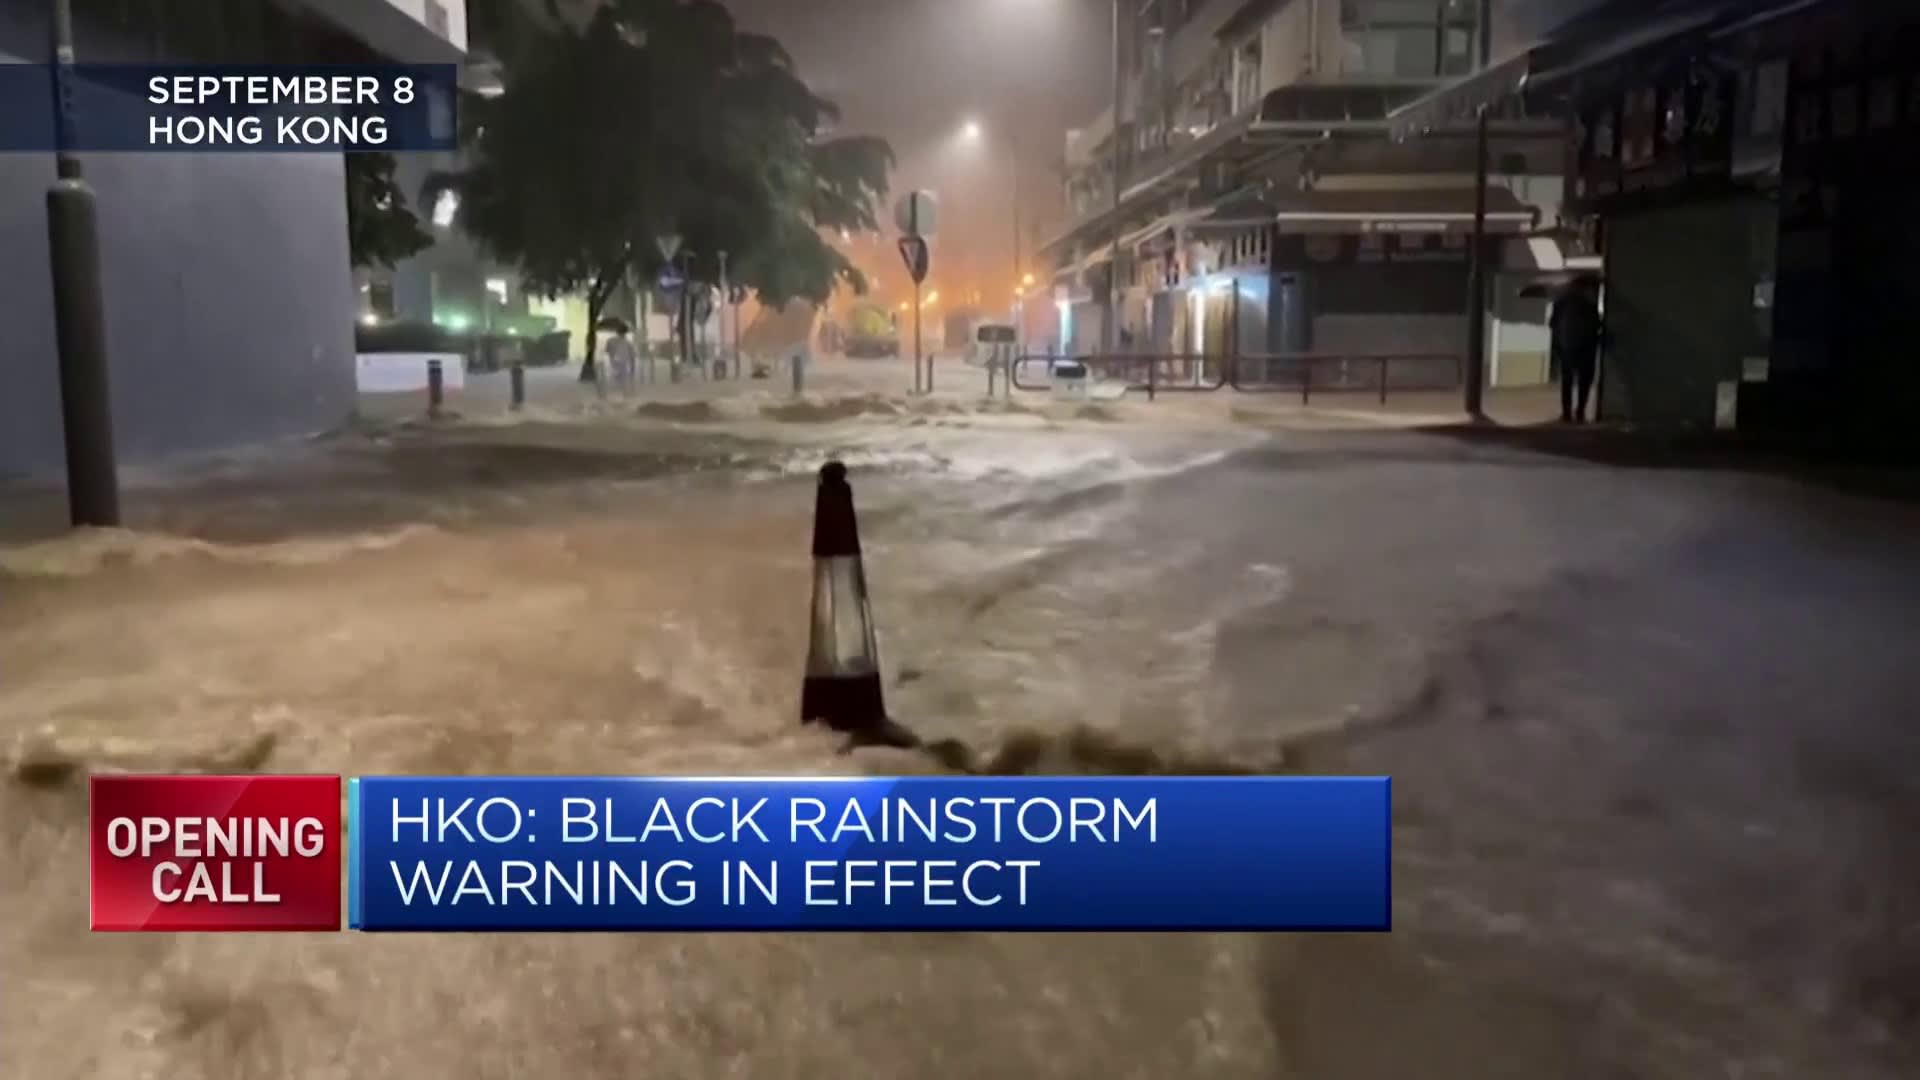 Hong Kong halts morning operations as ‘black storm’ warning takes effect